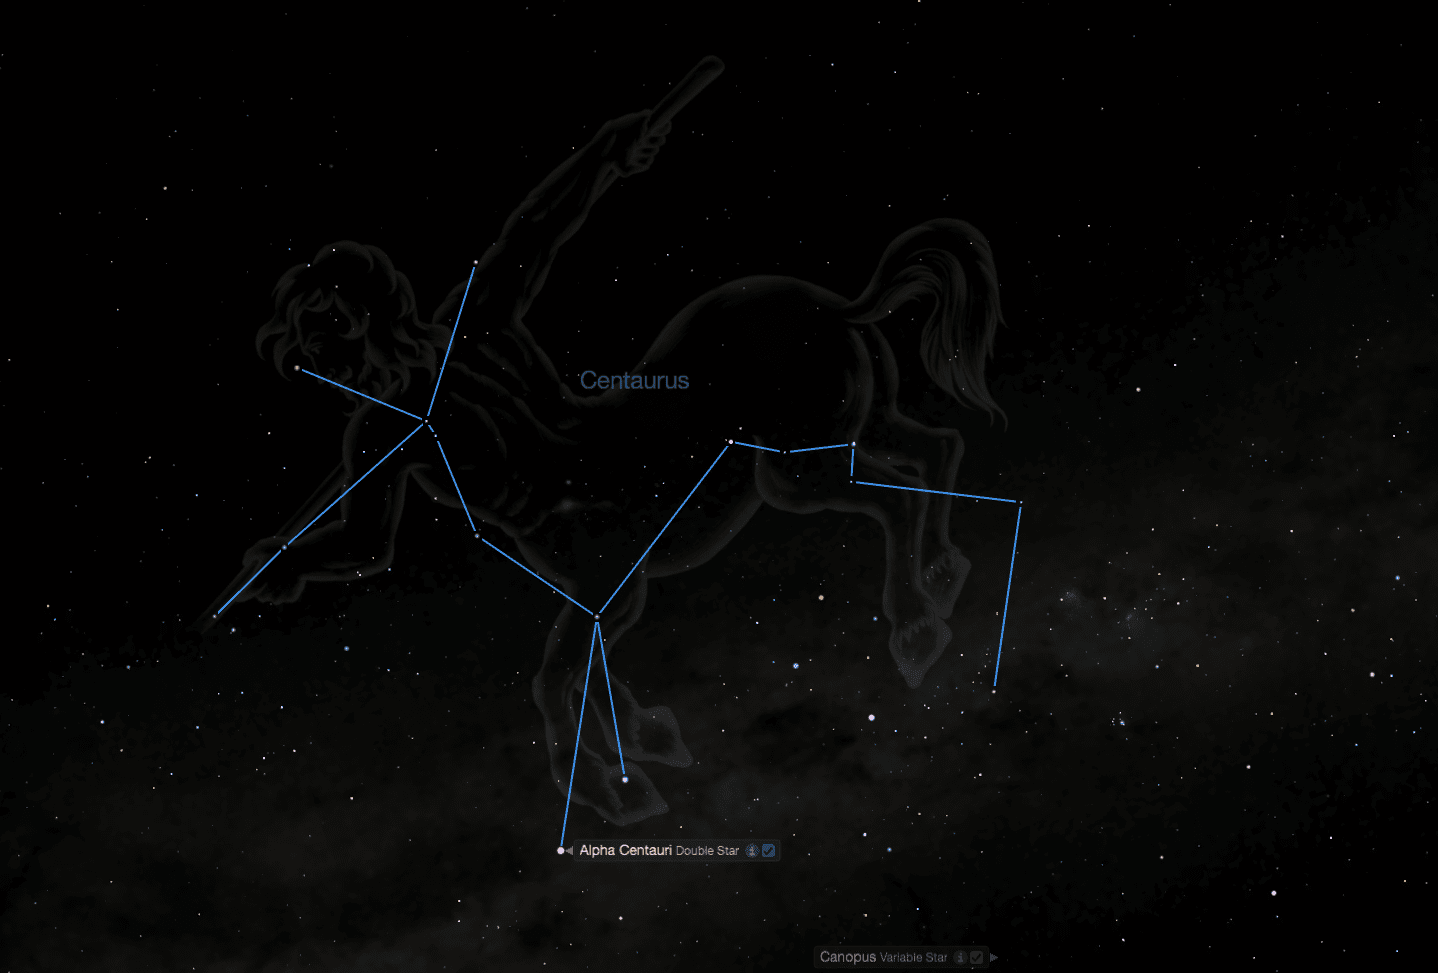 AlphaCentauri Constellation